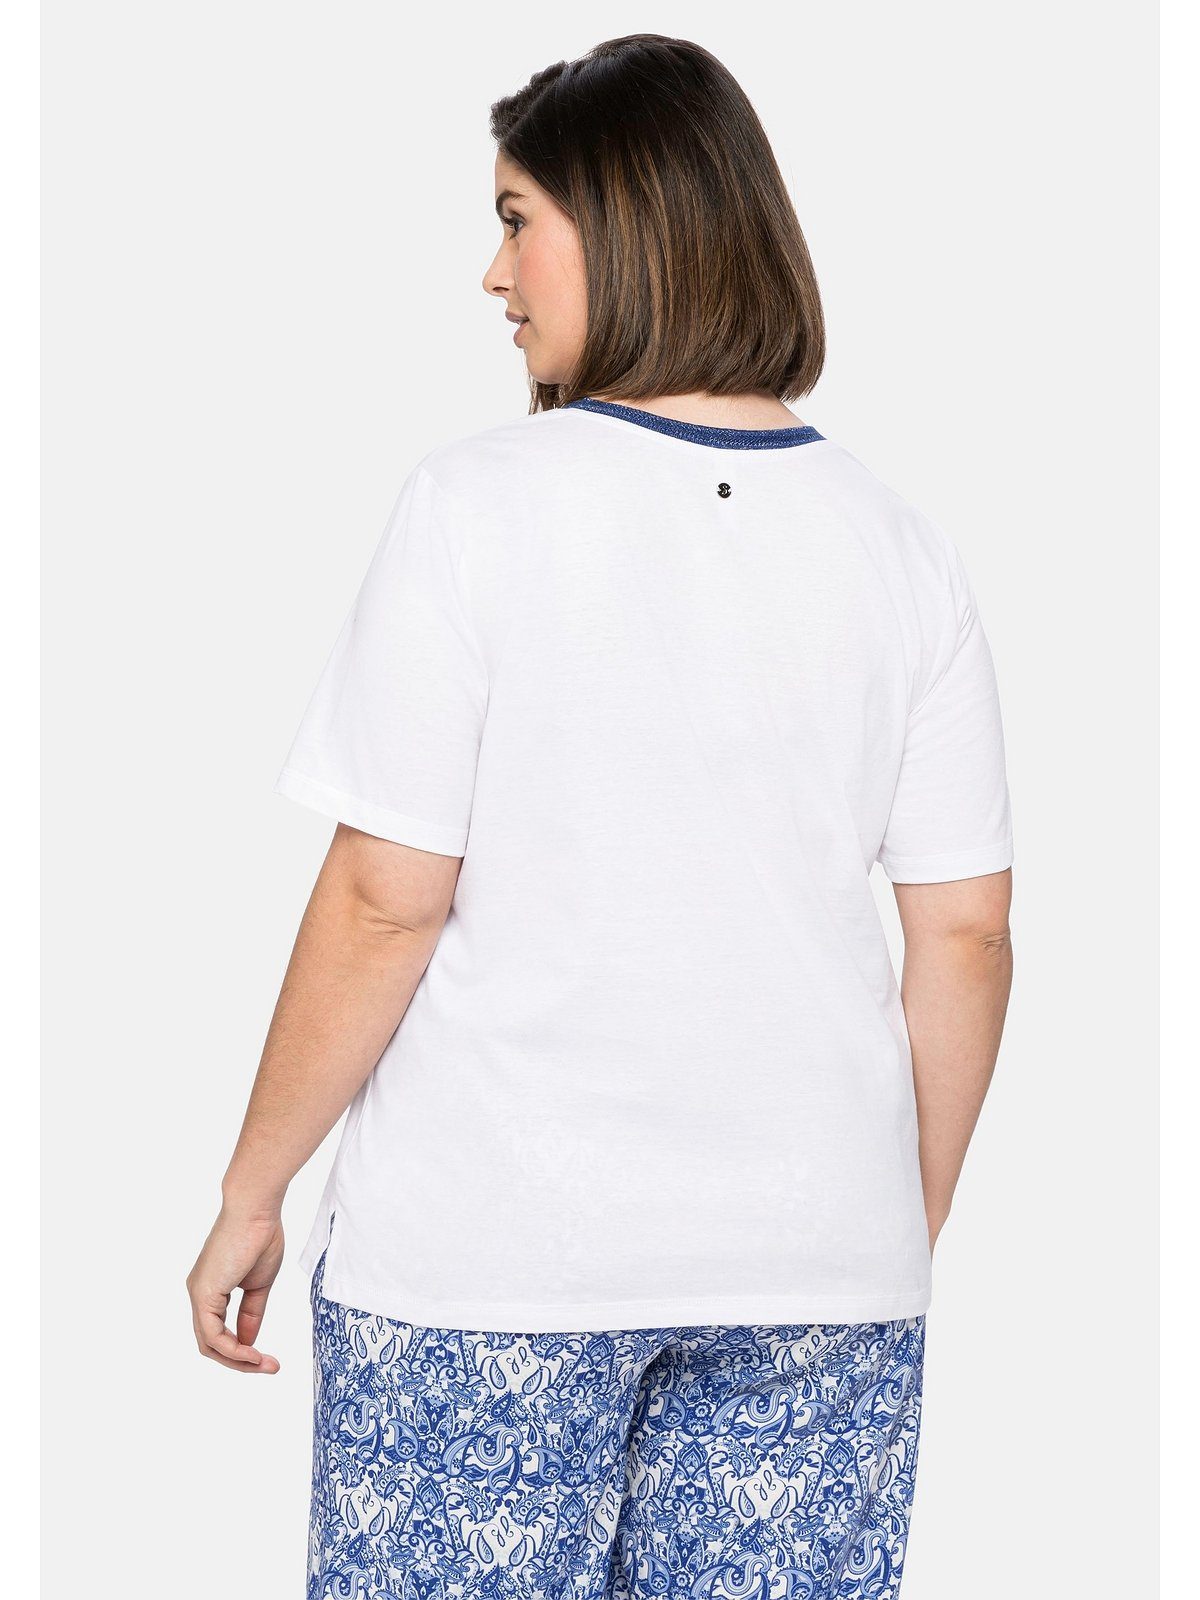 Sheego T-Shirt Große Ausschnitt und Größen am Effektgarn modischem Frontdruck weiß mit